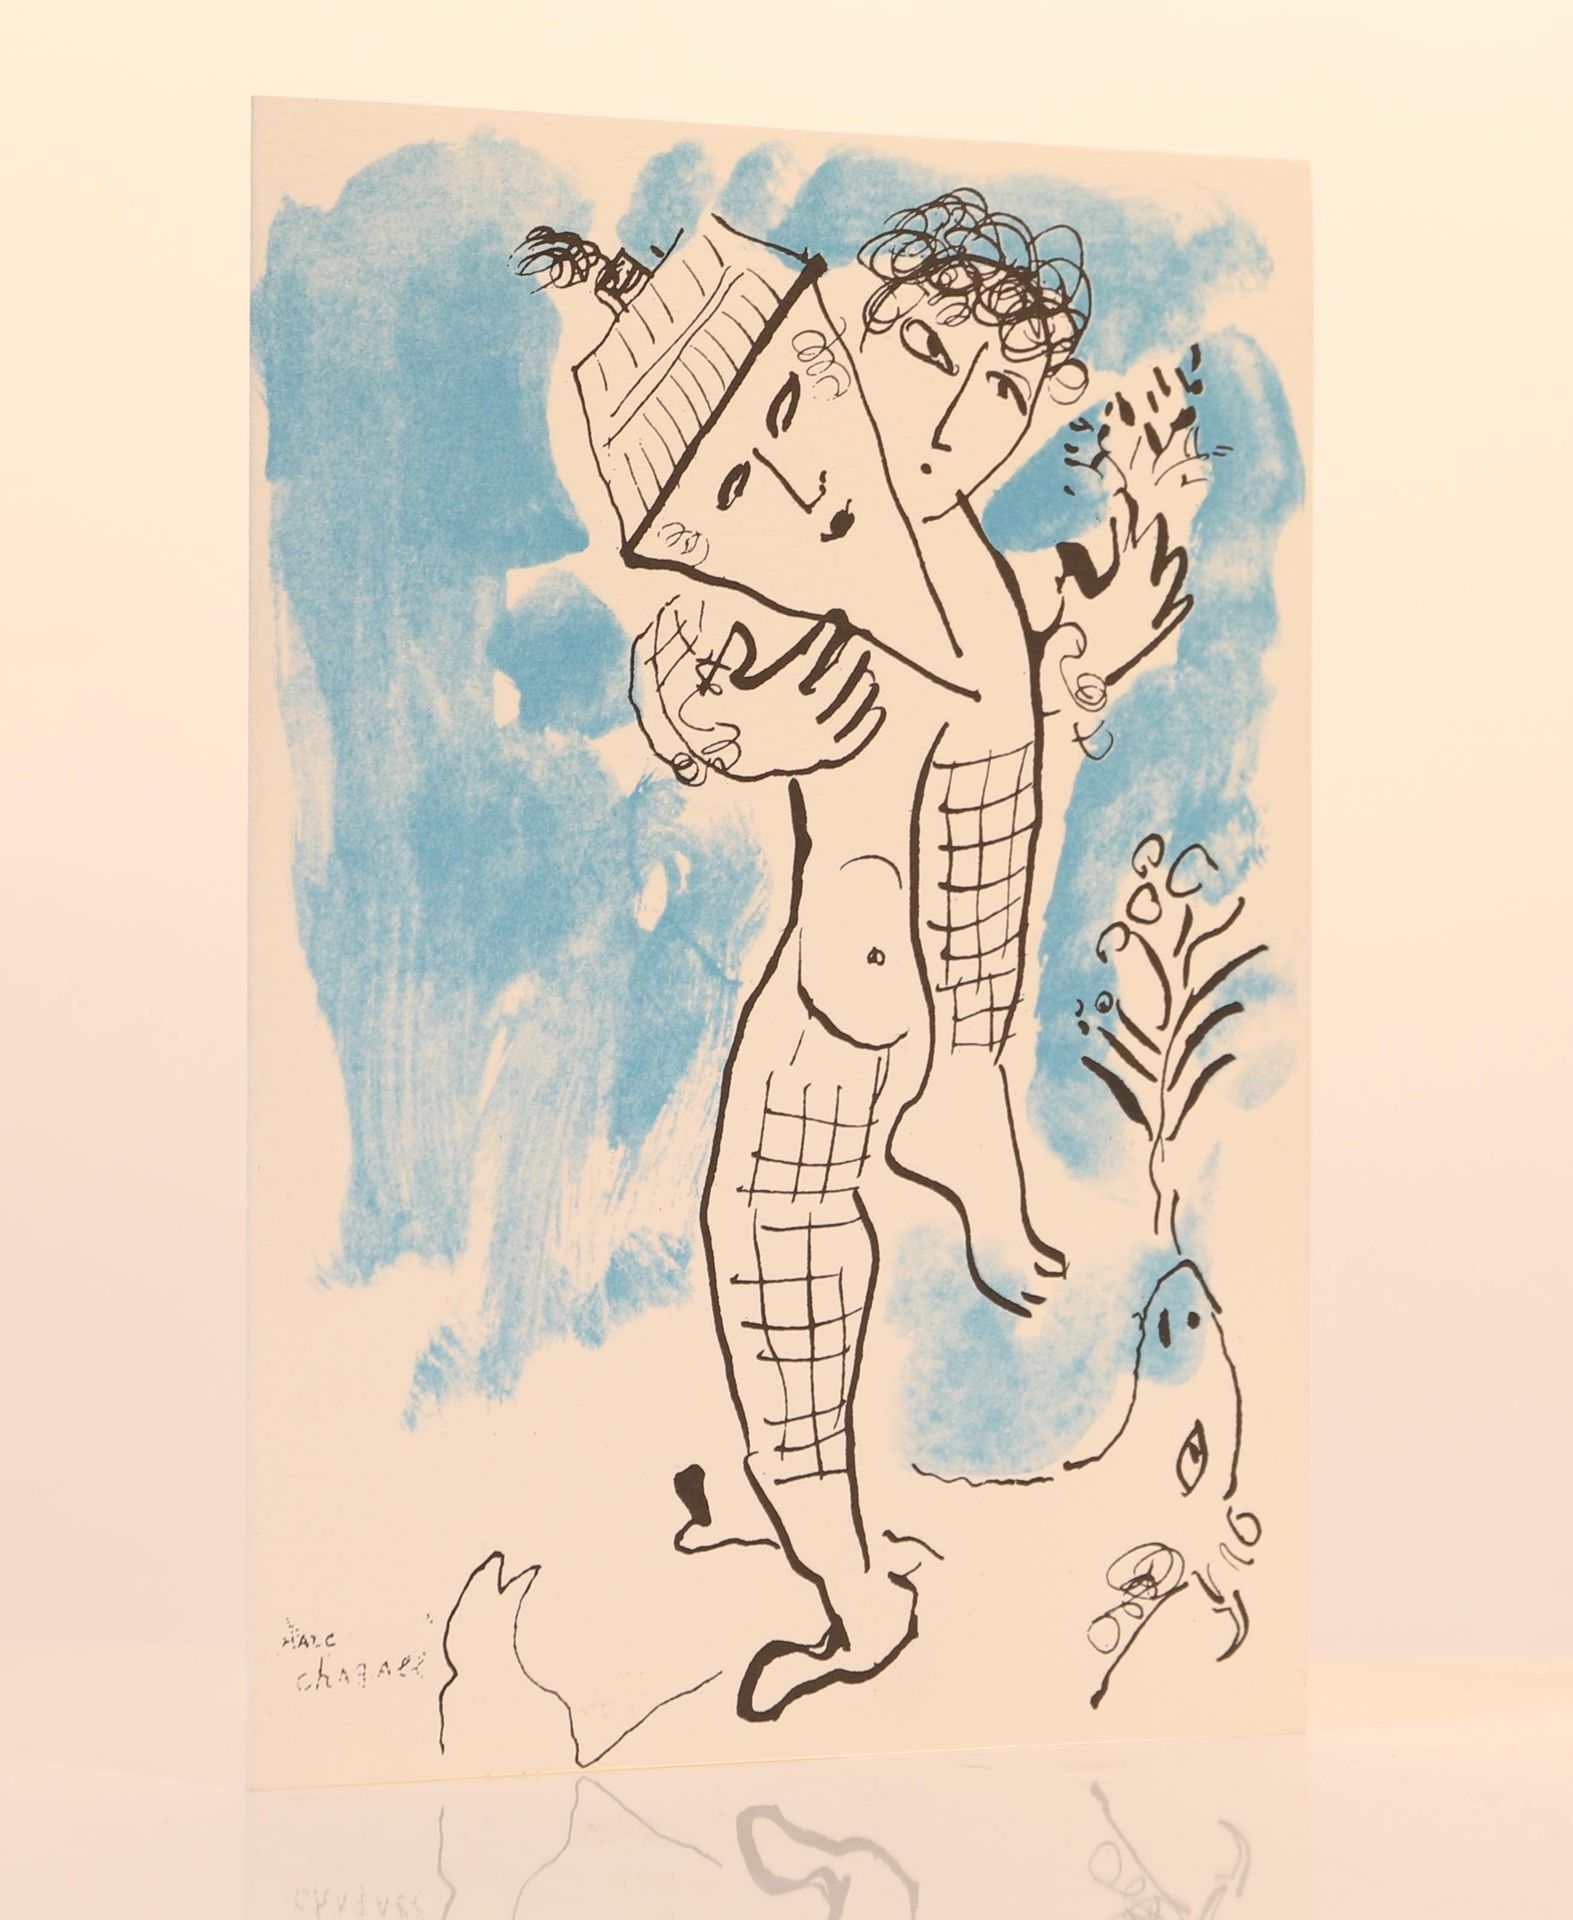 Null Biglietto d'invito l'Acrobate di Chagall

Dimensioni: H; 21; L: 15 cm